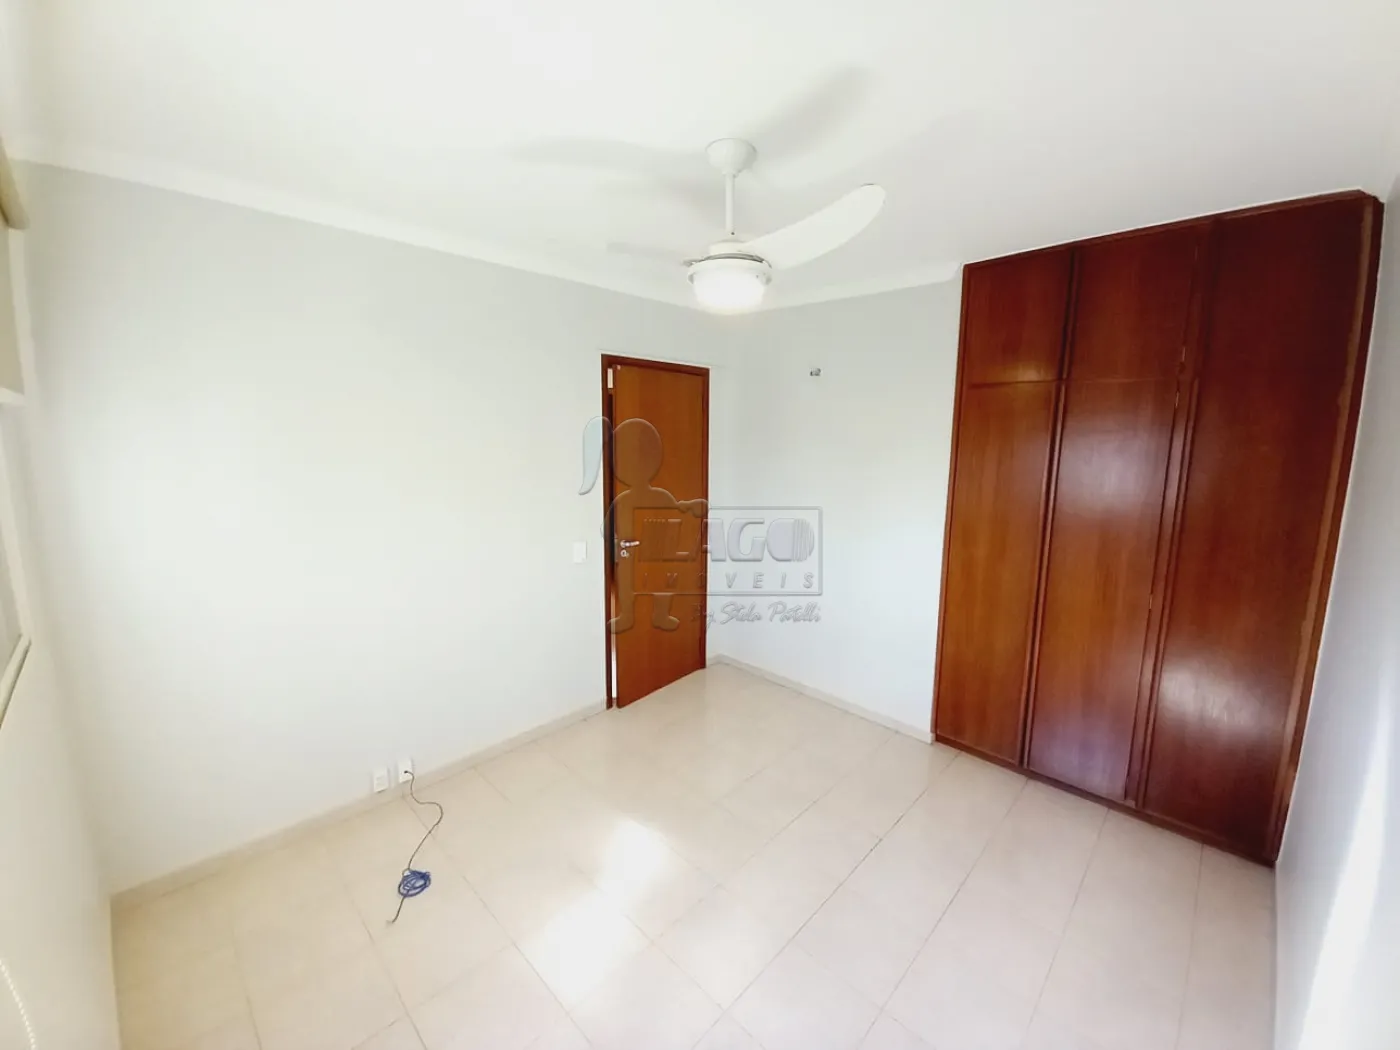 Alugar Apartamento / Padrão em Ribeirão Preto R$ 1.750,00 - Foto 10